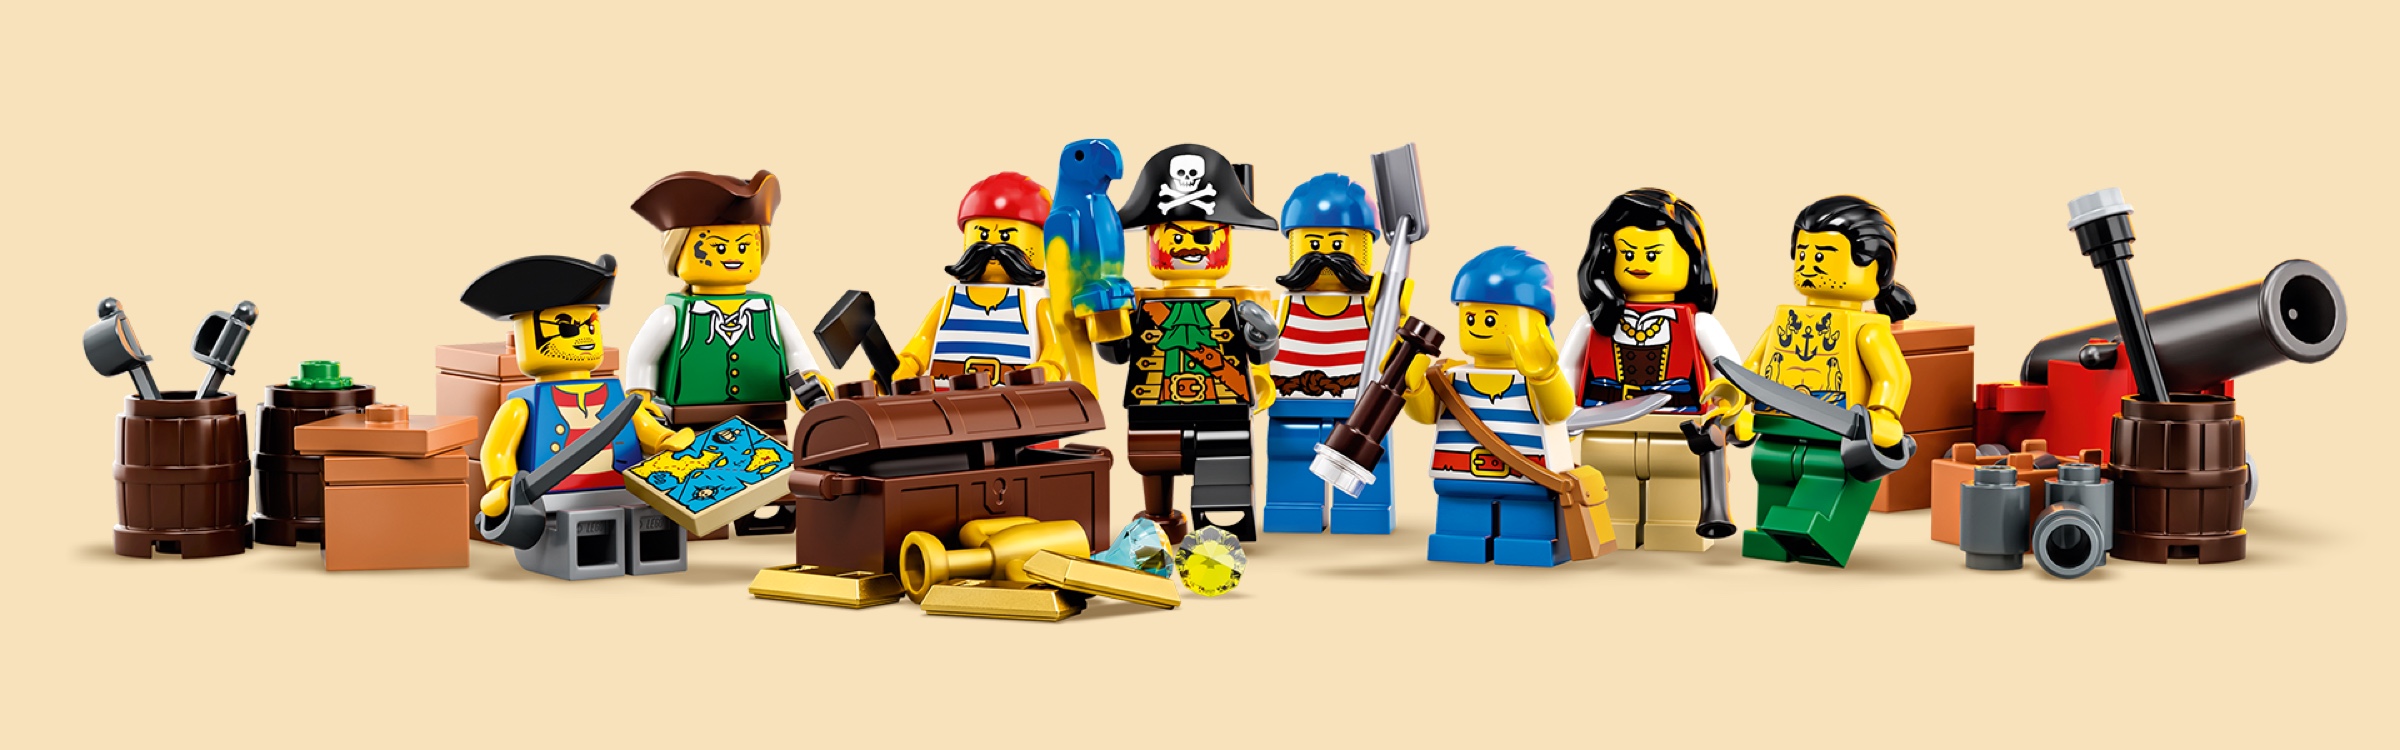 Nuevo LEGO Azul Amarillo Loro Aves Animal Pirata Minifigura parte X1 21322 